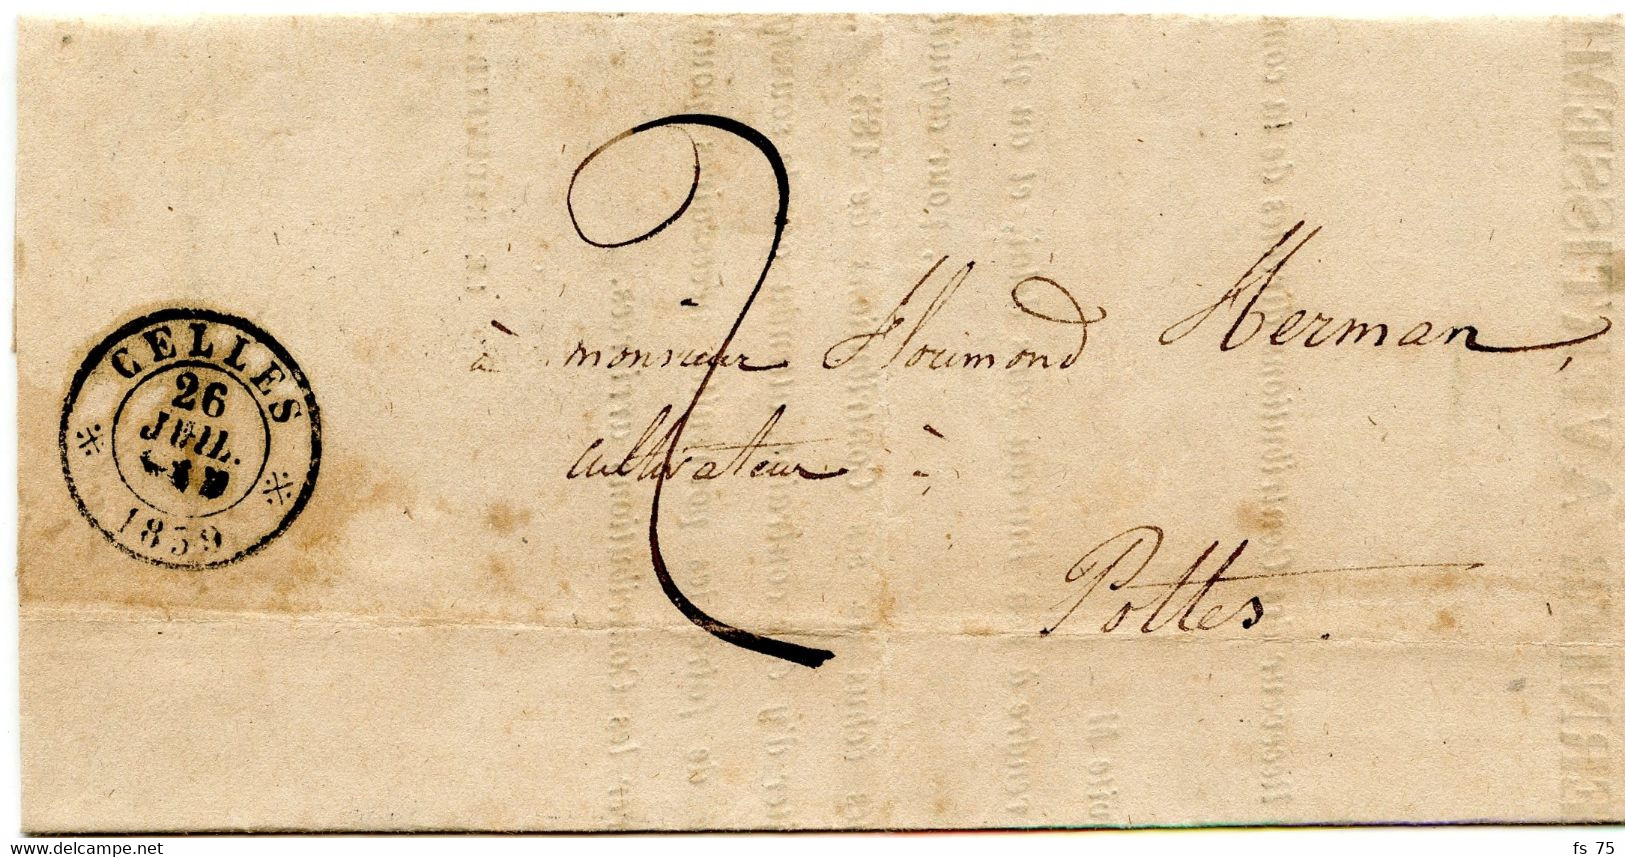 BELGIQUE - TAD DOUBLE CERCLE CELLES SUR LETTRE TAXEE, 1859 - Lettres & Documents